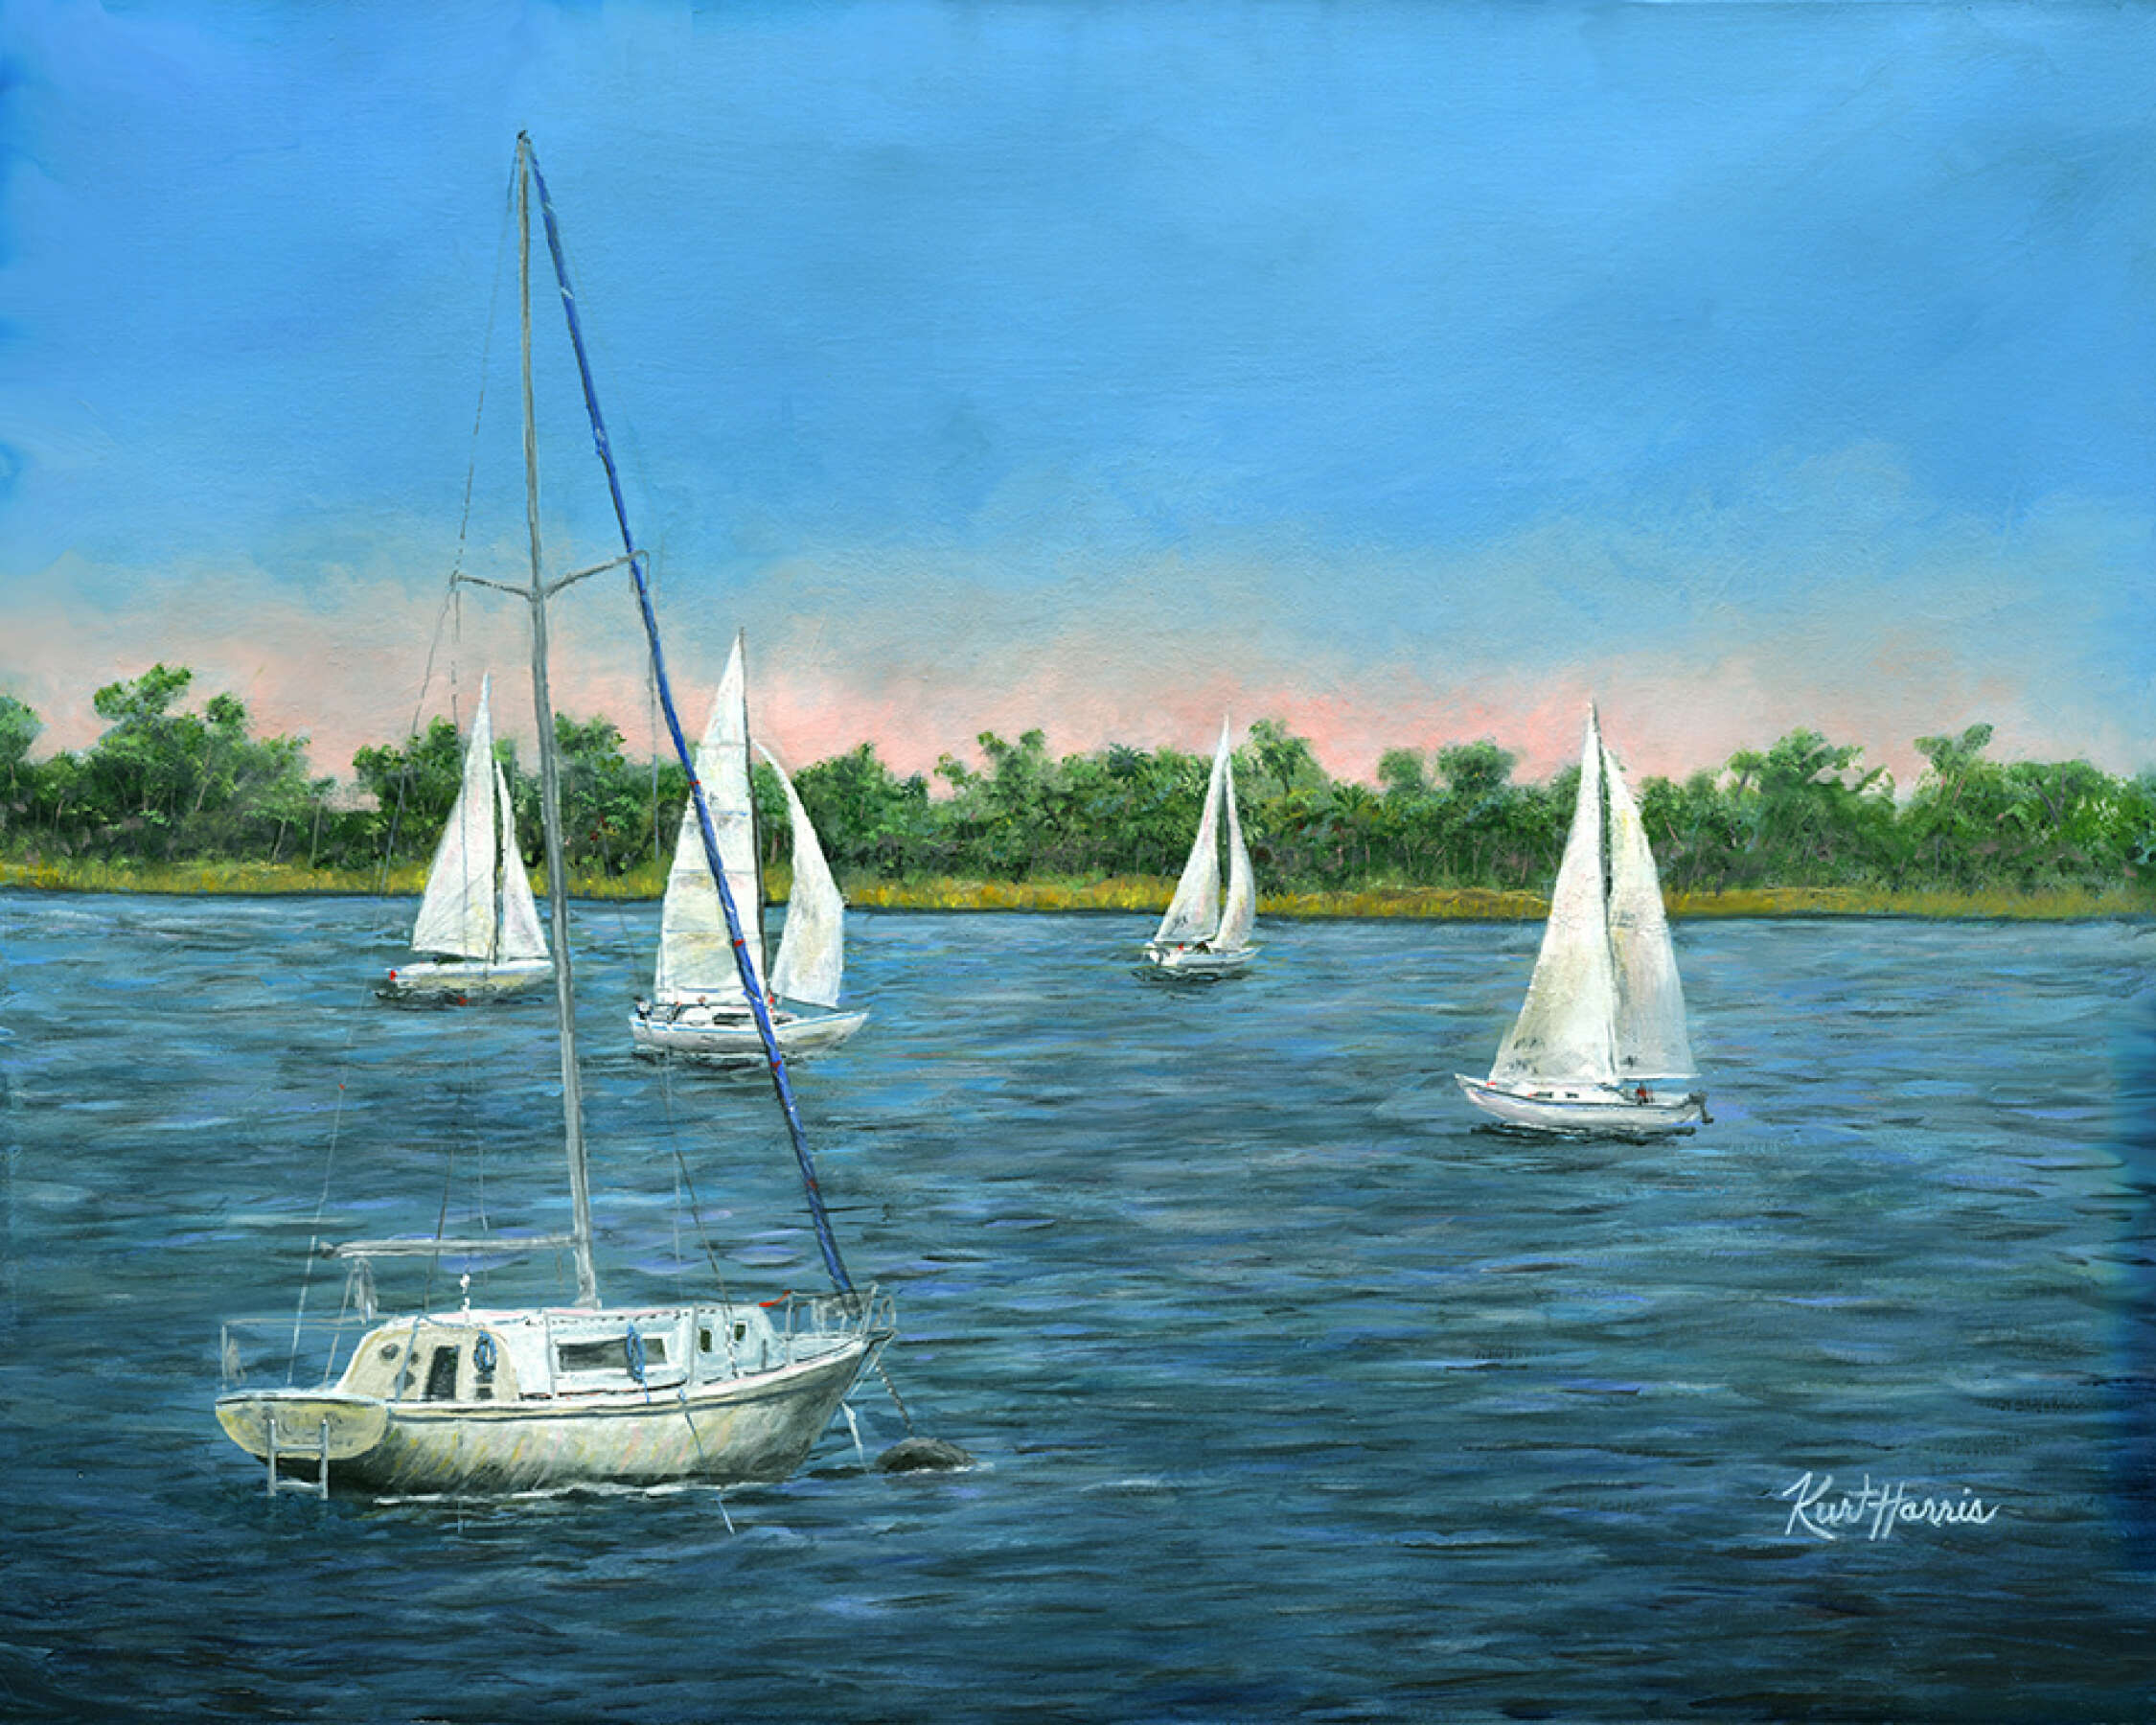 Sails on Lake Monroe